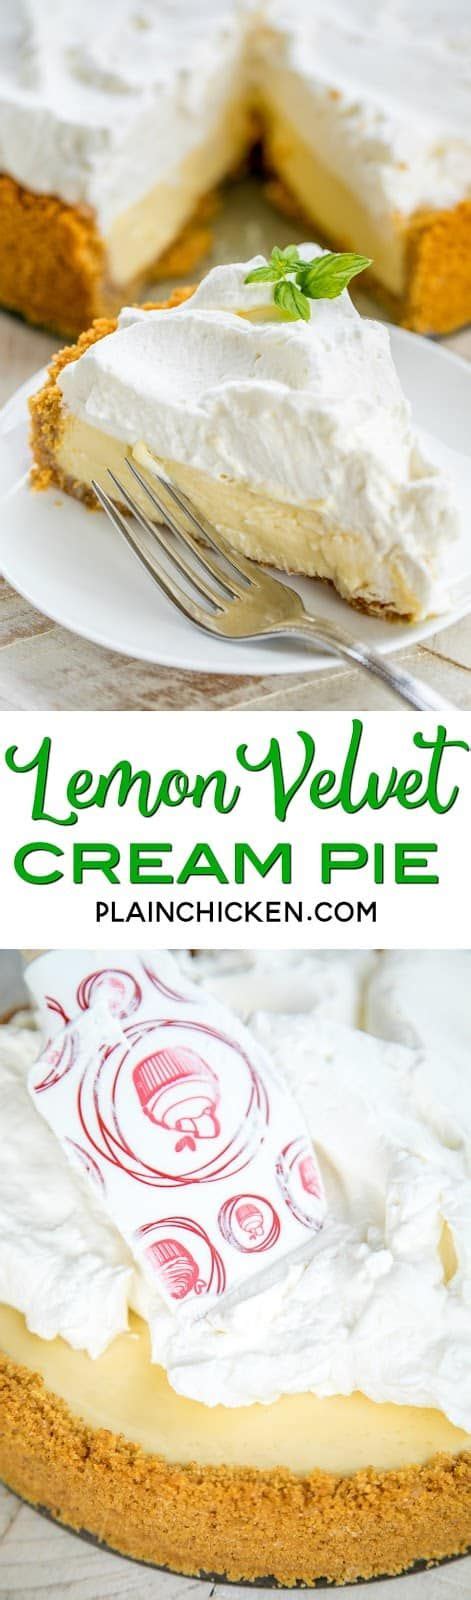 lemon velvet cream pie plain chicken eat dessert lemon recipes lemon desserts